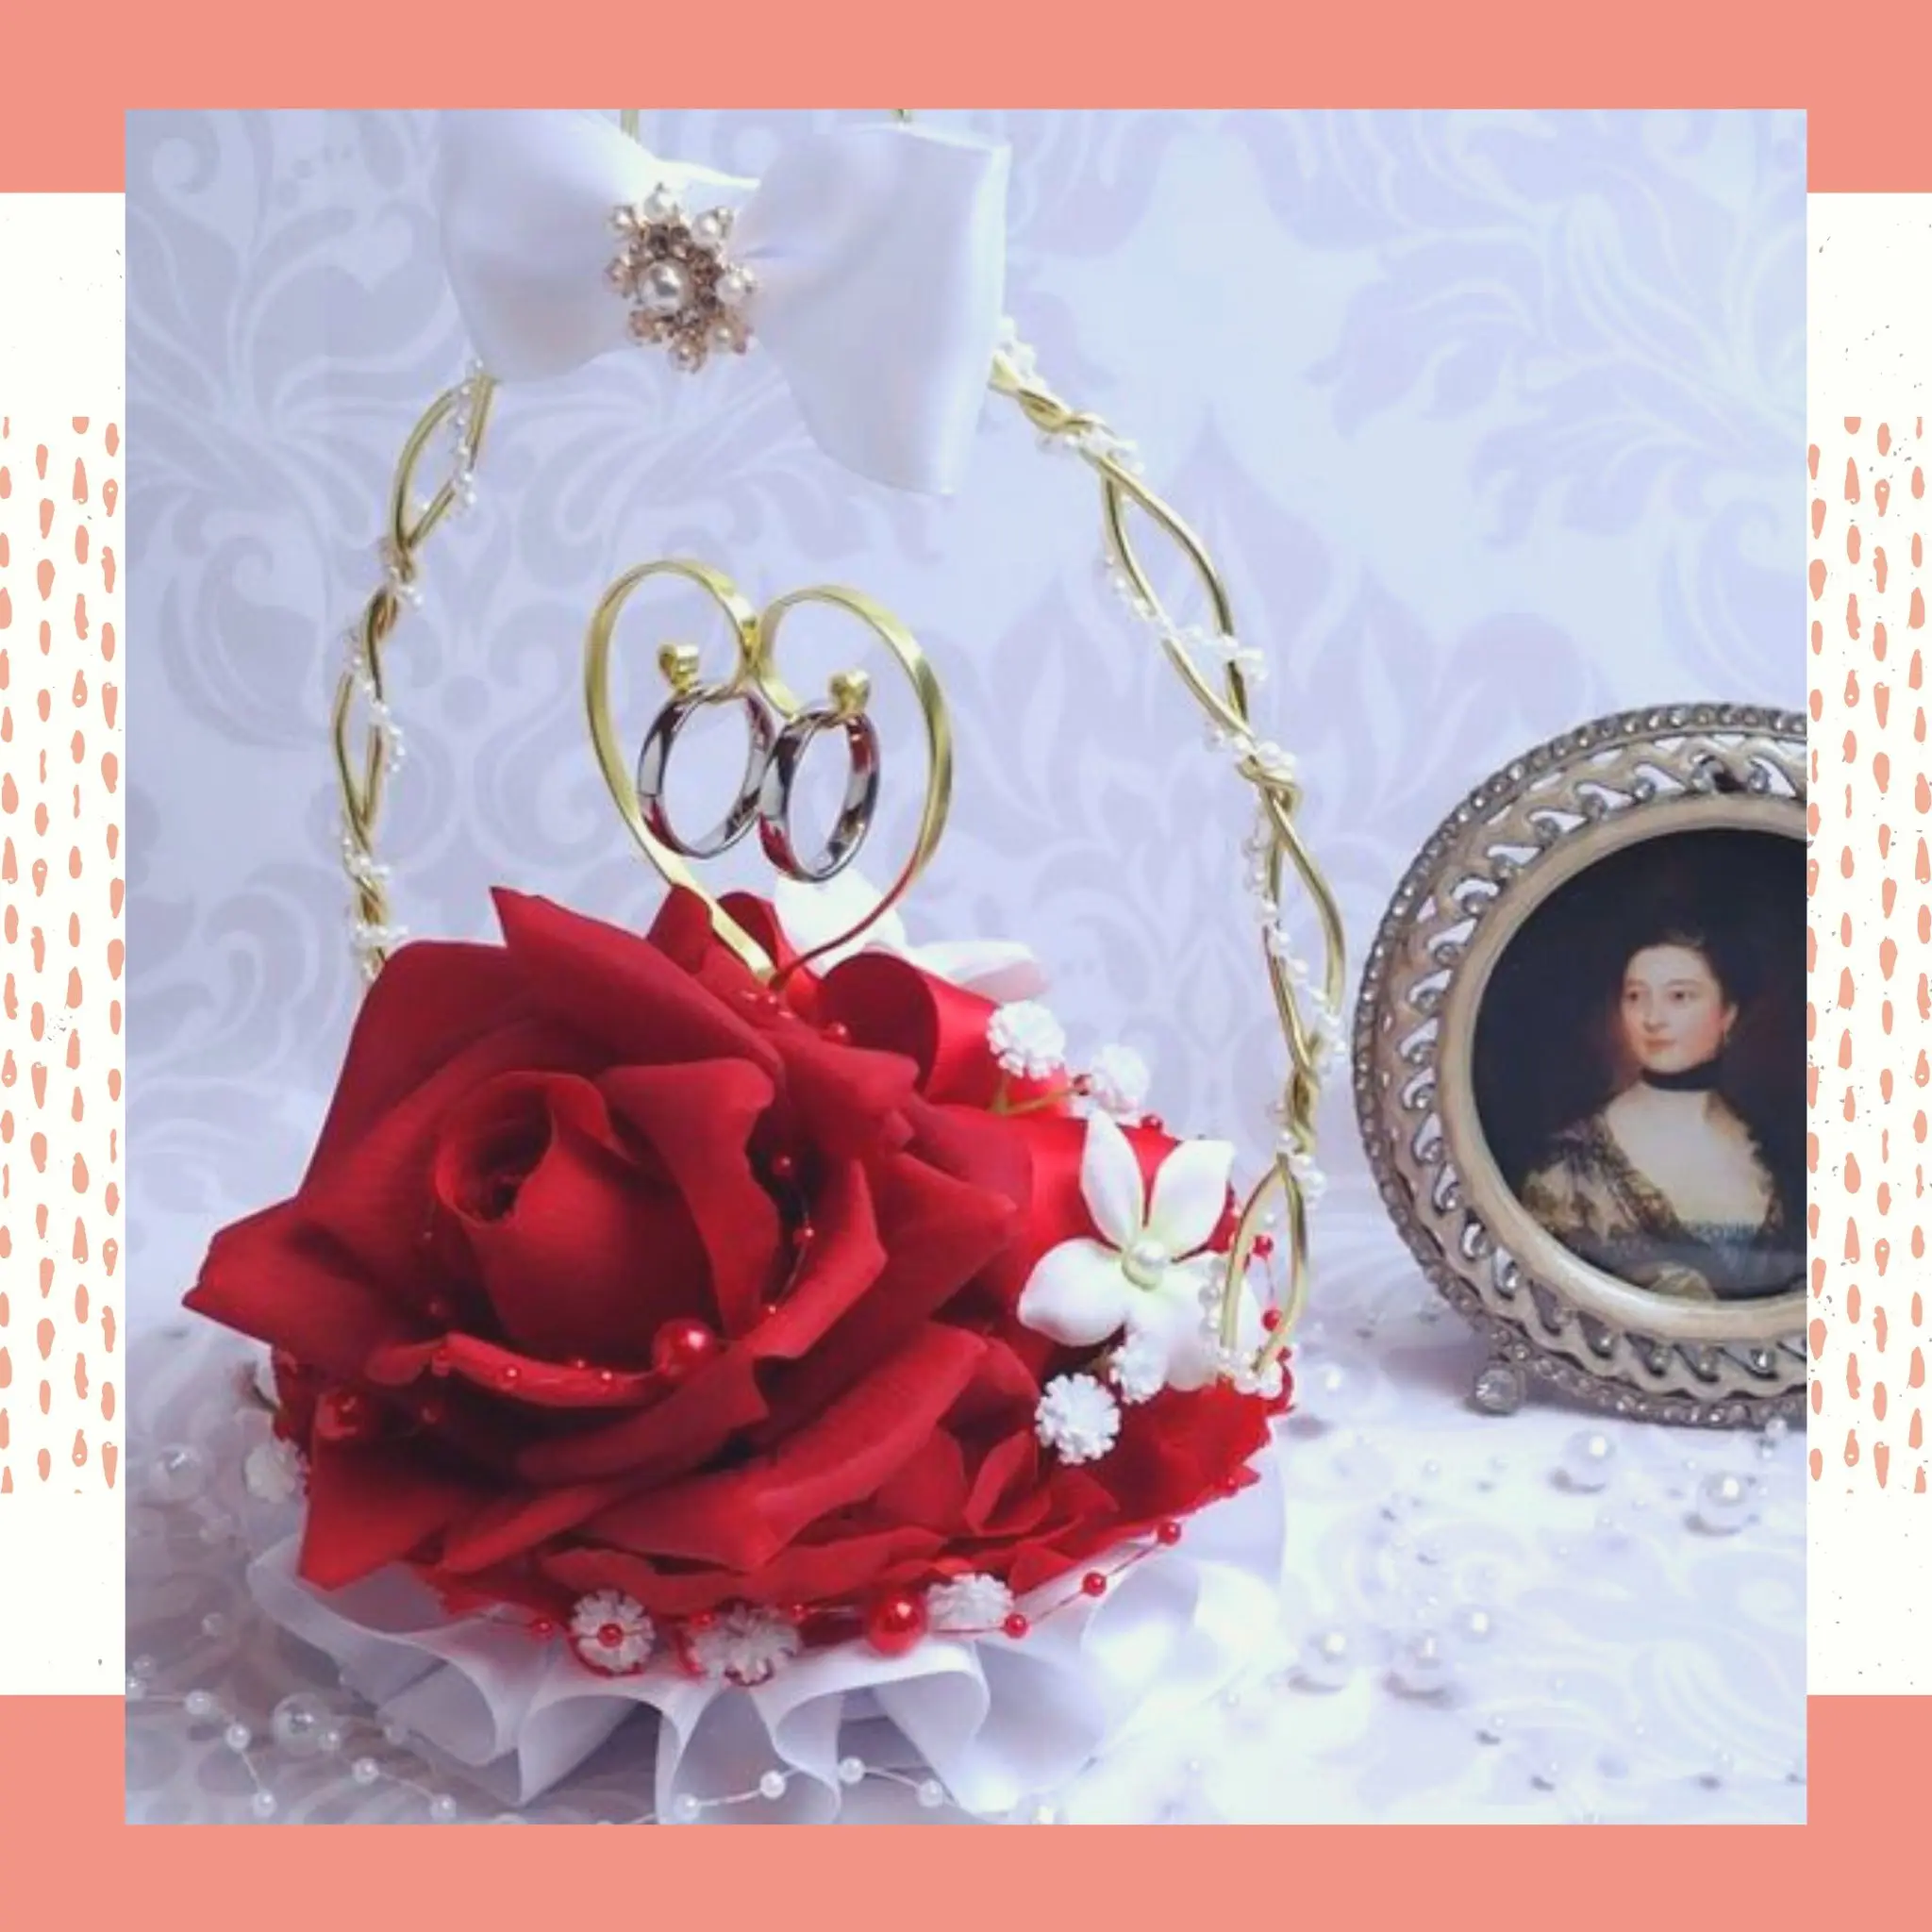 Porta alianças feito de cesta dourada com detalhes em pérolas, laço branco e uma linda flor vermelha